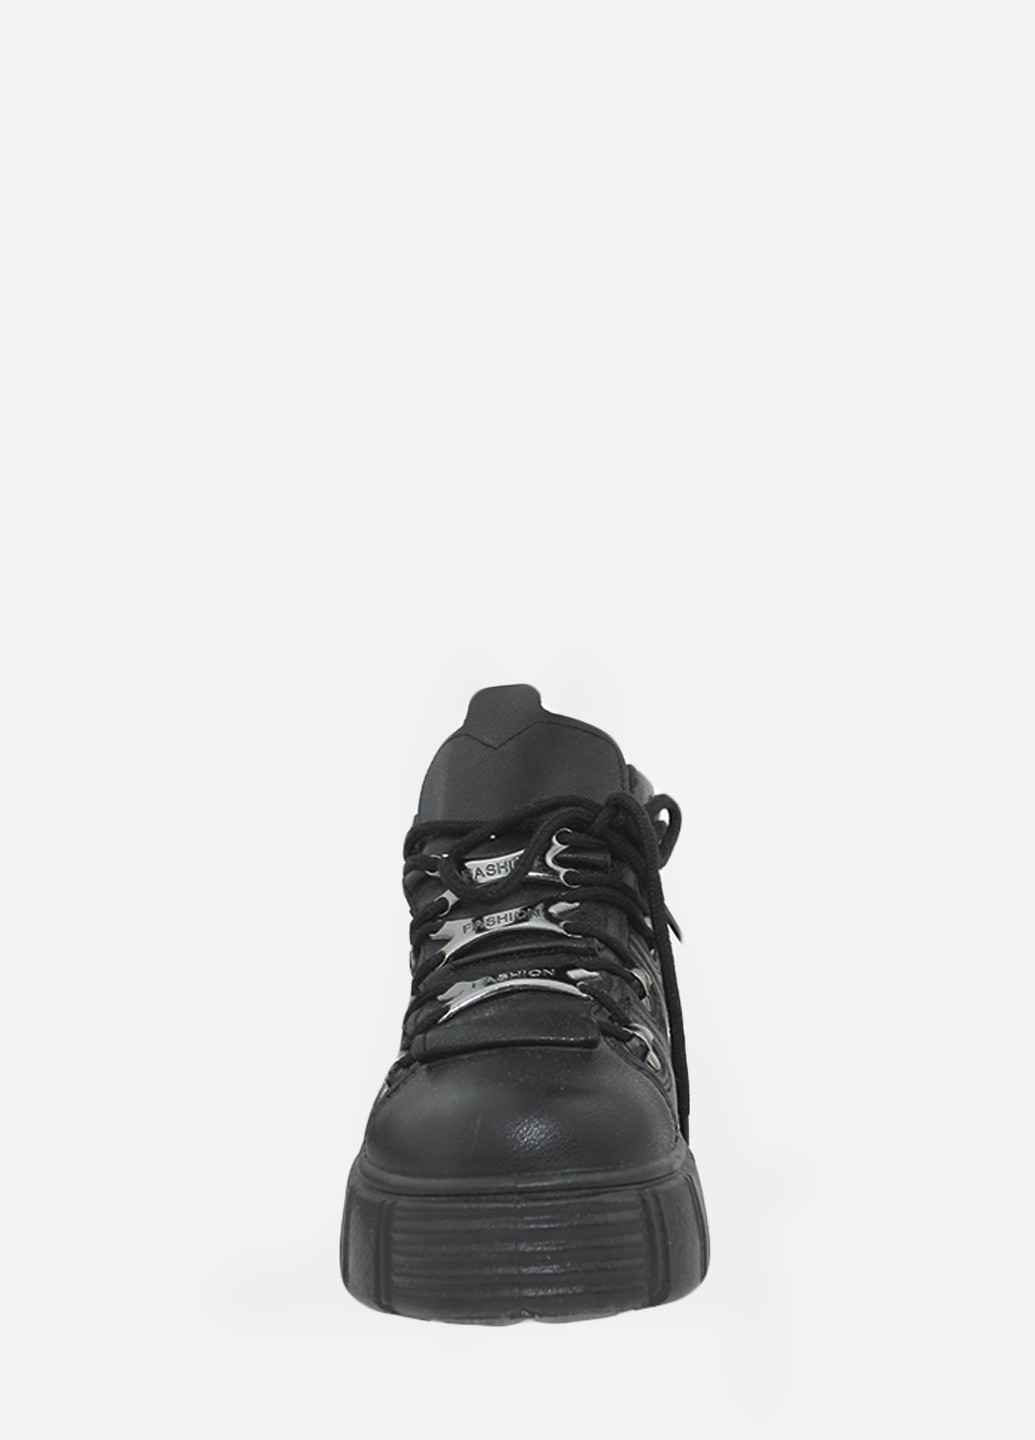 Осенние ботинки rlk665 black-pu Loretta из искусственной кожи